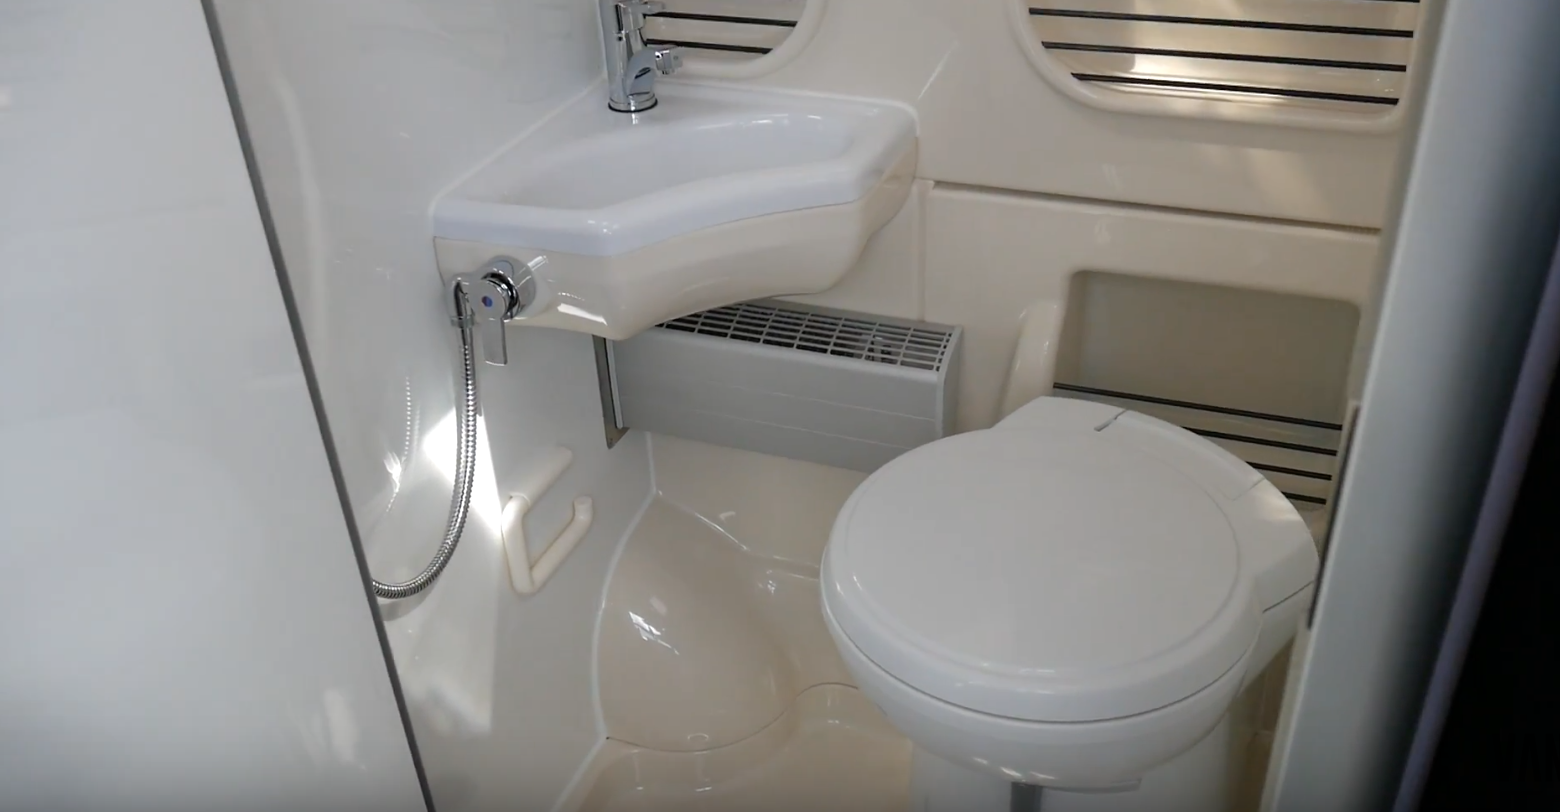 Volkswagen Westfalia Camper - Bathroom